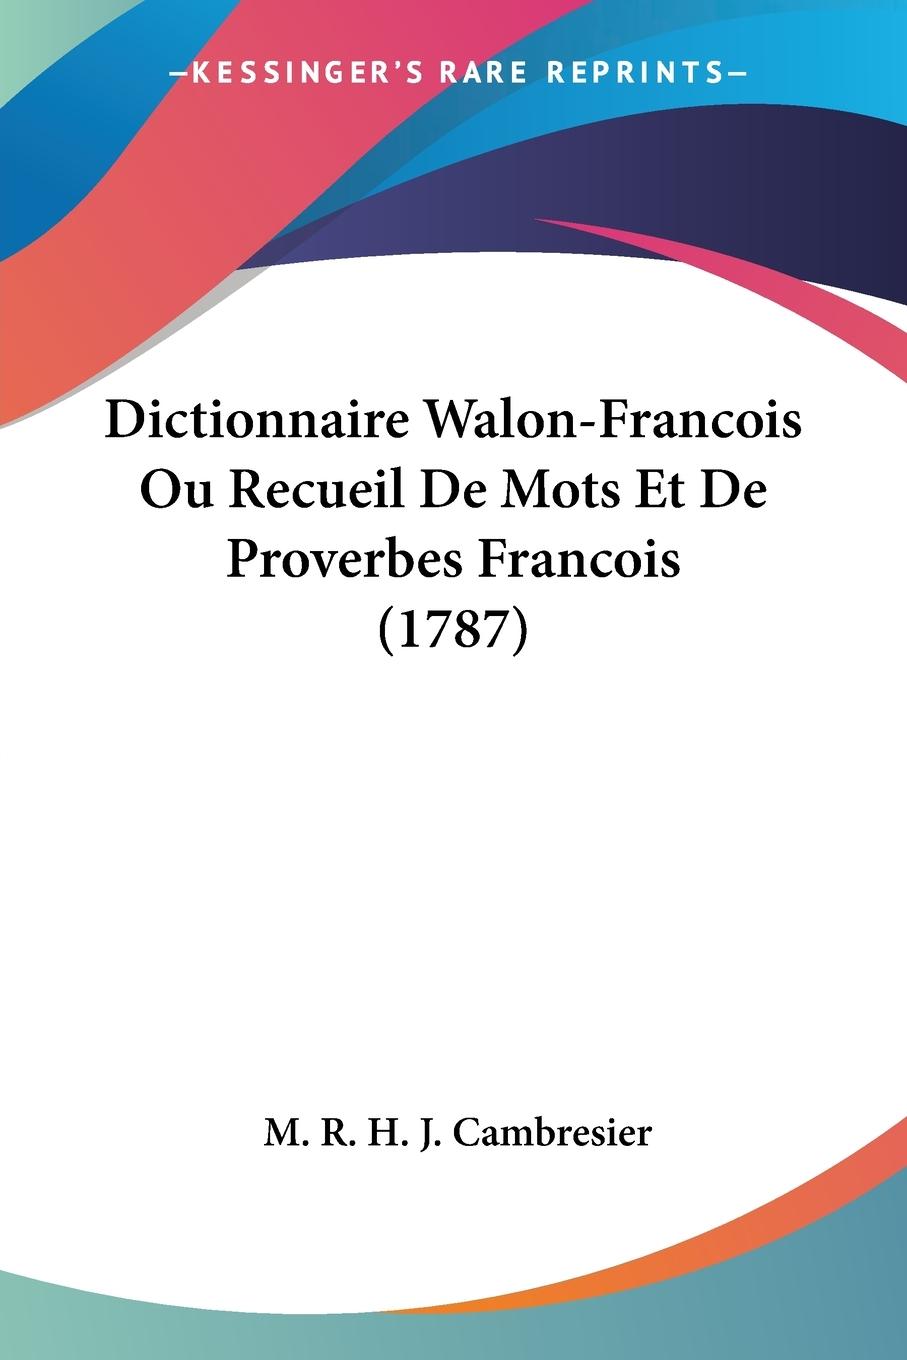 Dictionnaire Walon-Francois Ou Recueil De Mots Et De Proverbes Francois (1787) - Cambresier, M. R. H. J.